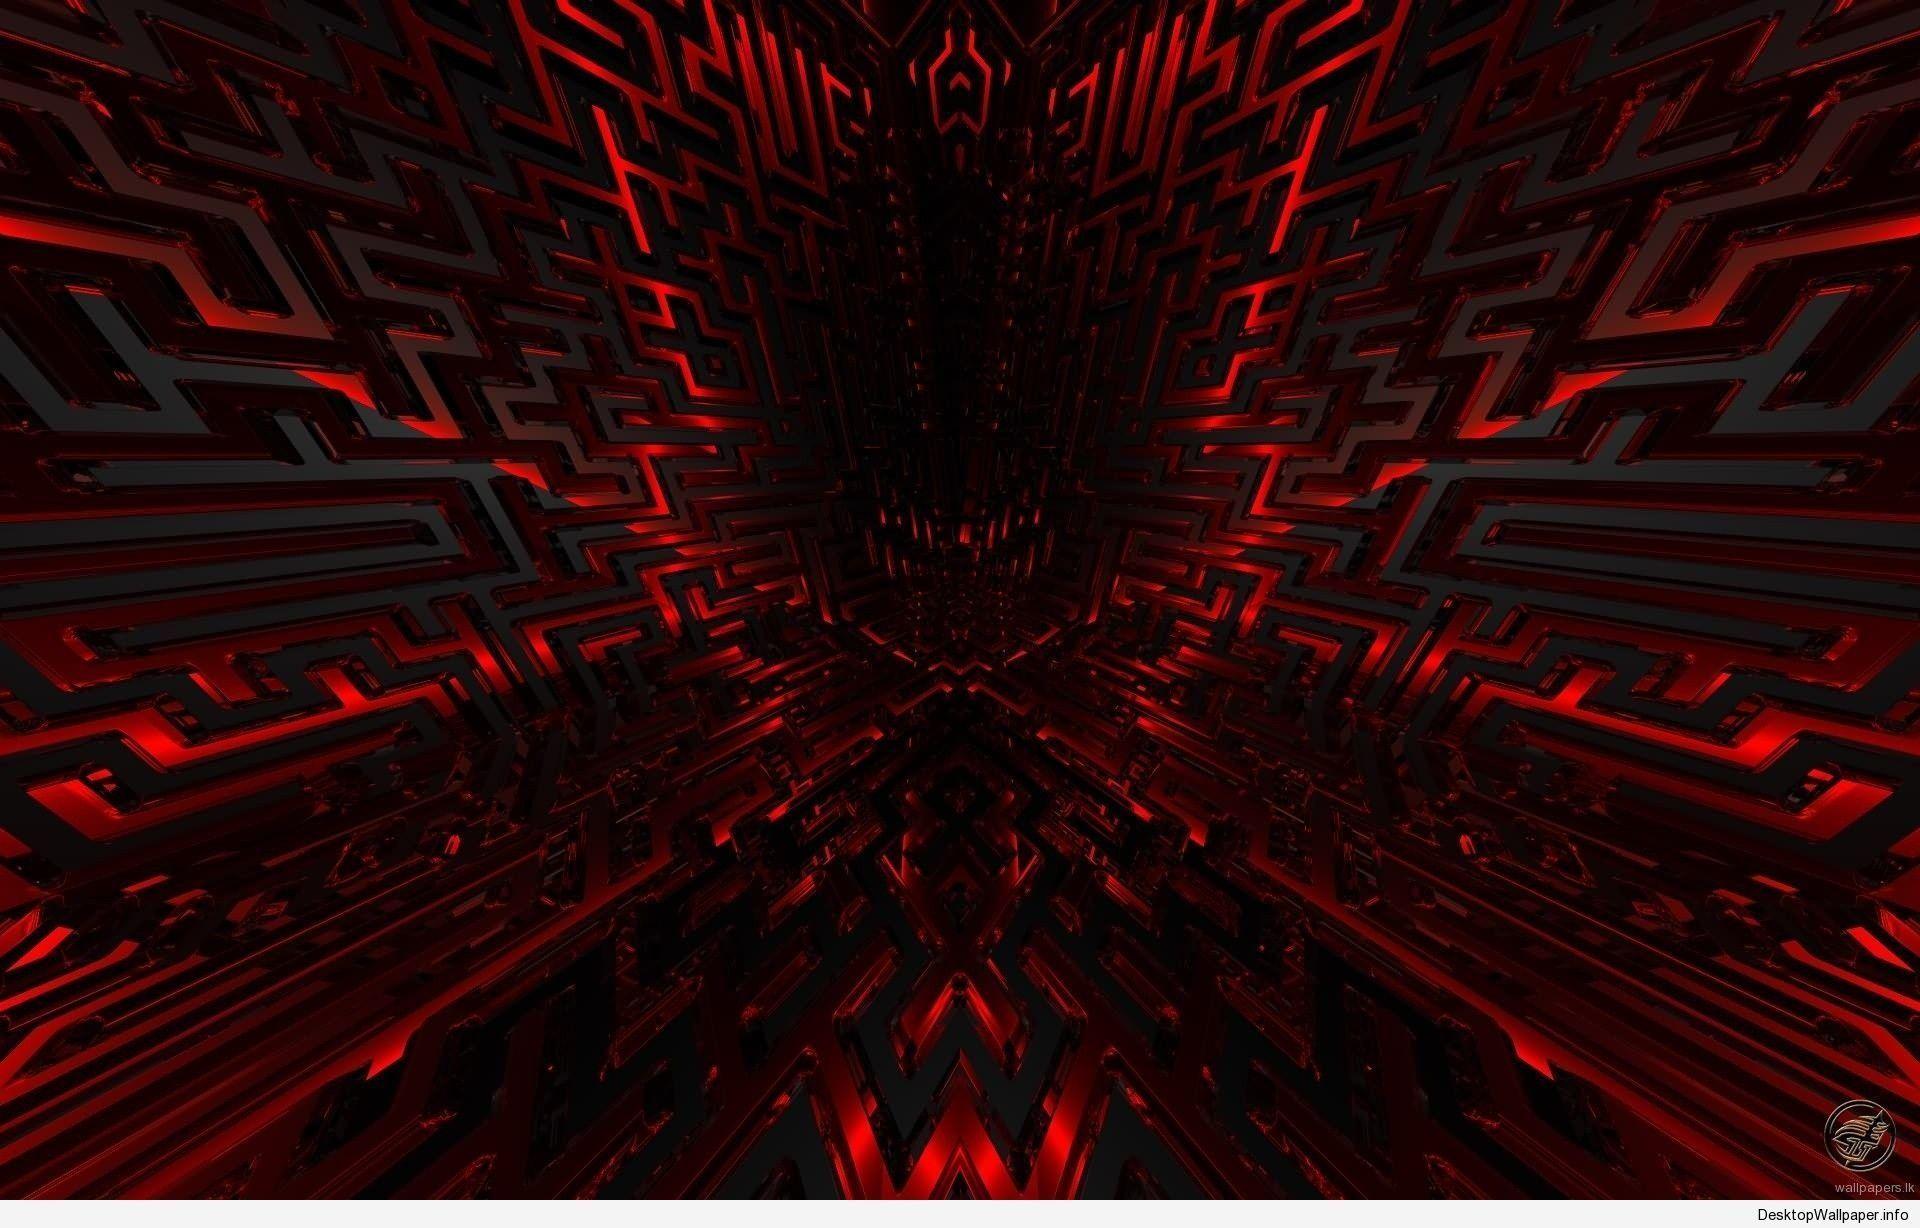 Red and Black Desktop Wallpapers - Top Những Hình Ảnh Đẹp